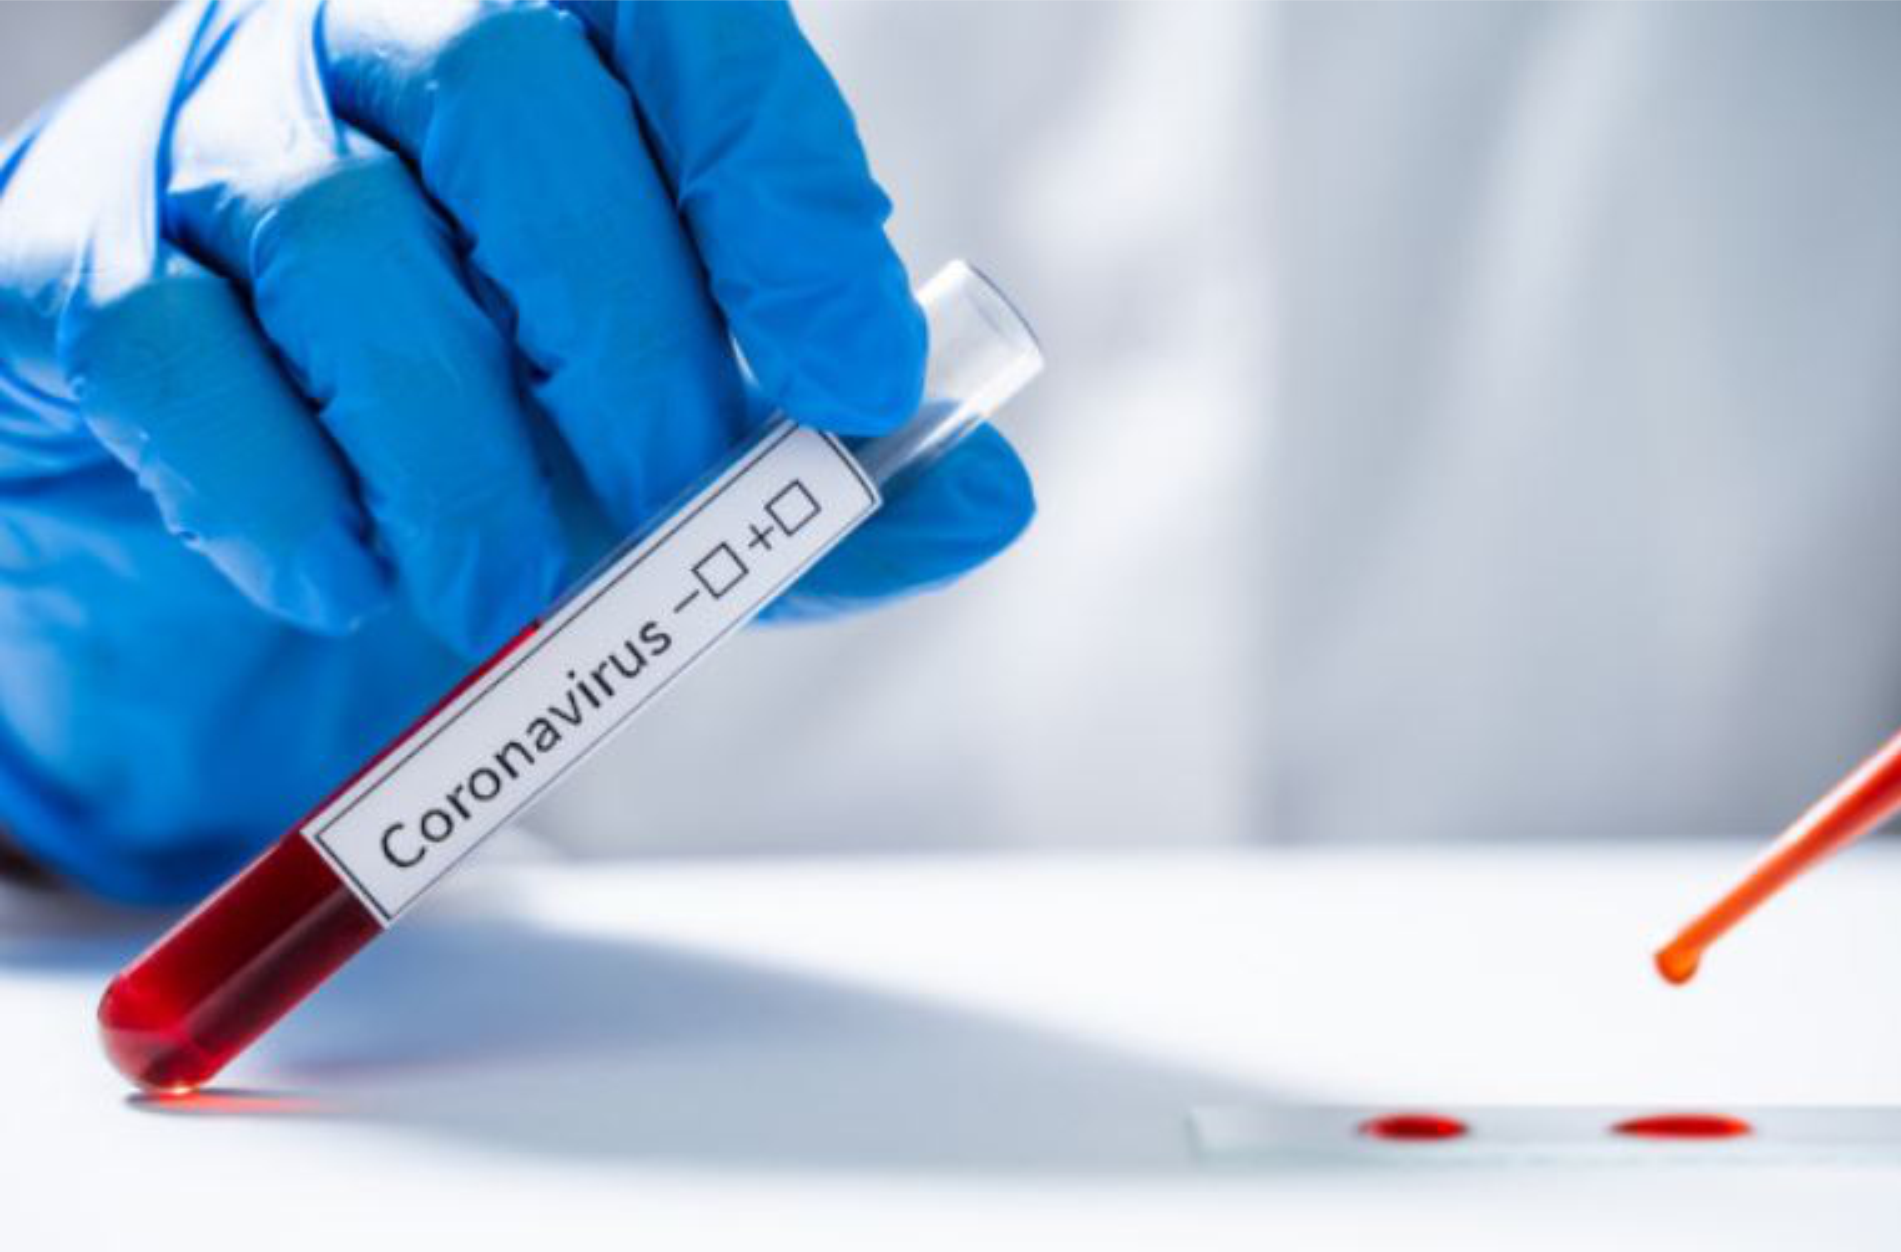 ООО «Зейтун Фармасьютикалс» предоставило Министерству здравоохранения 50 000 бесплатных наборов для тестирования ПЦР для тестирования на вирус COVID-19